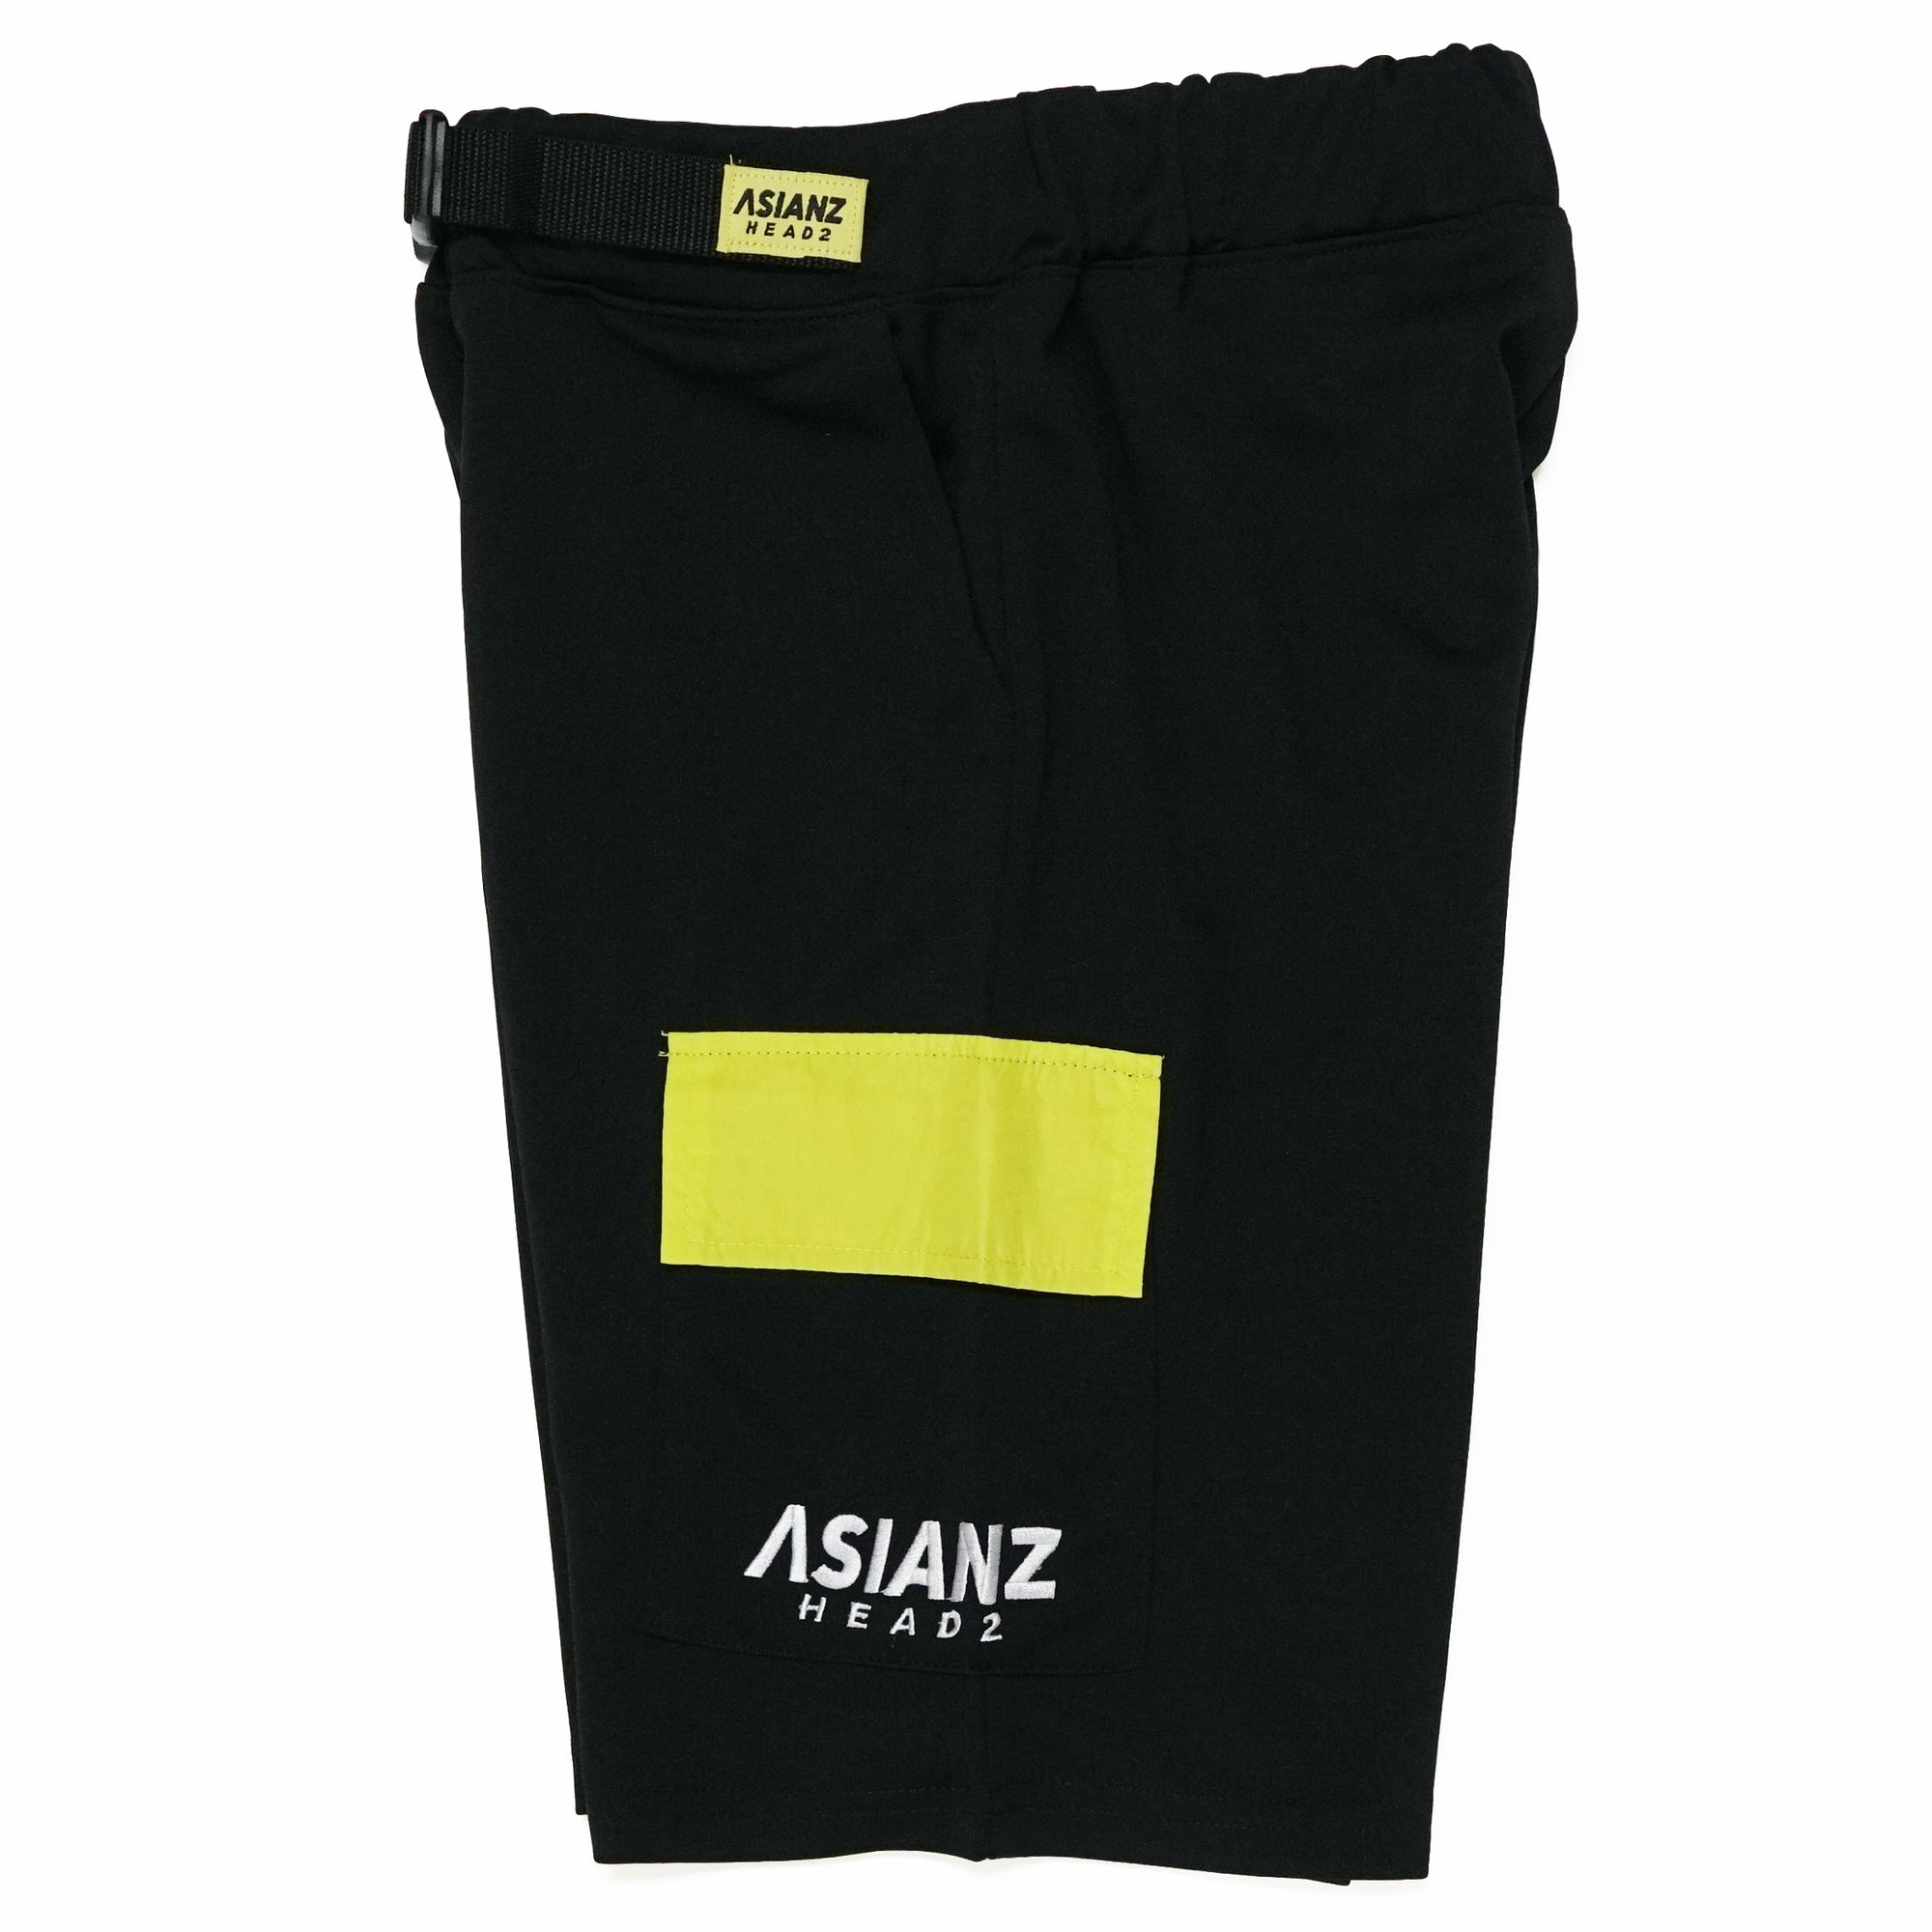 (40%オフ! セール商品)  ASIANZ HEAD2 サイドポケットハーフパンツ